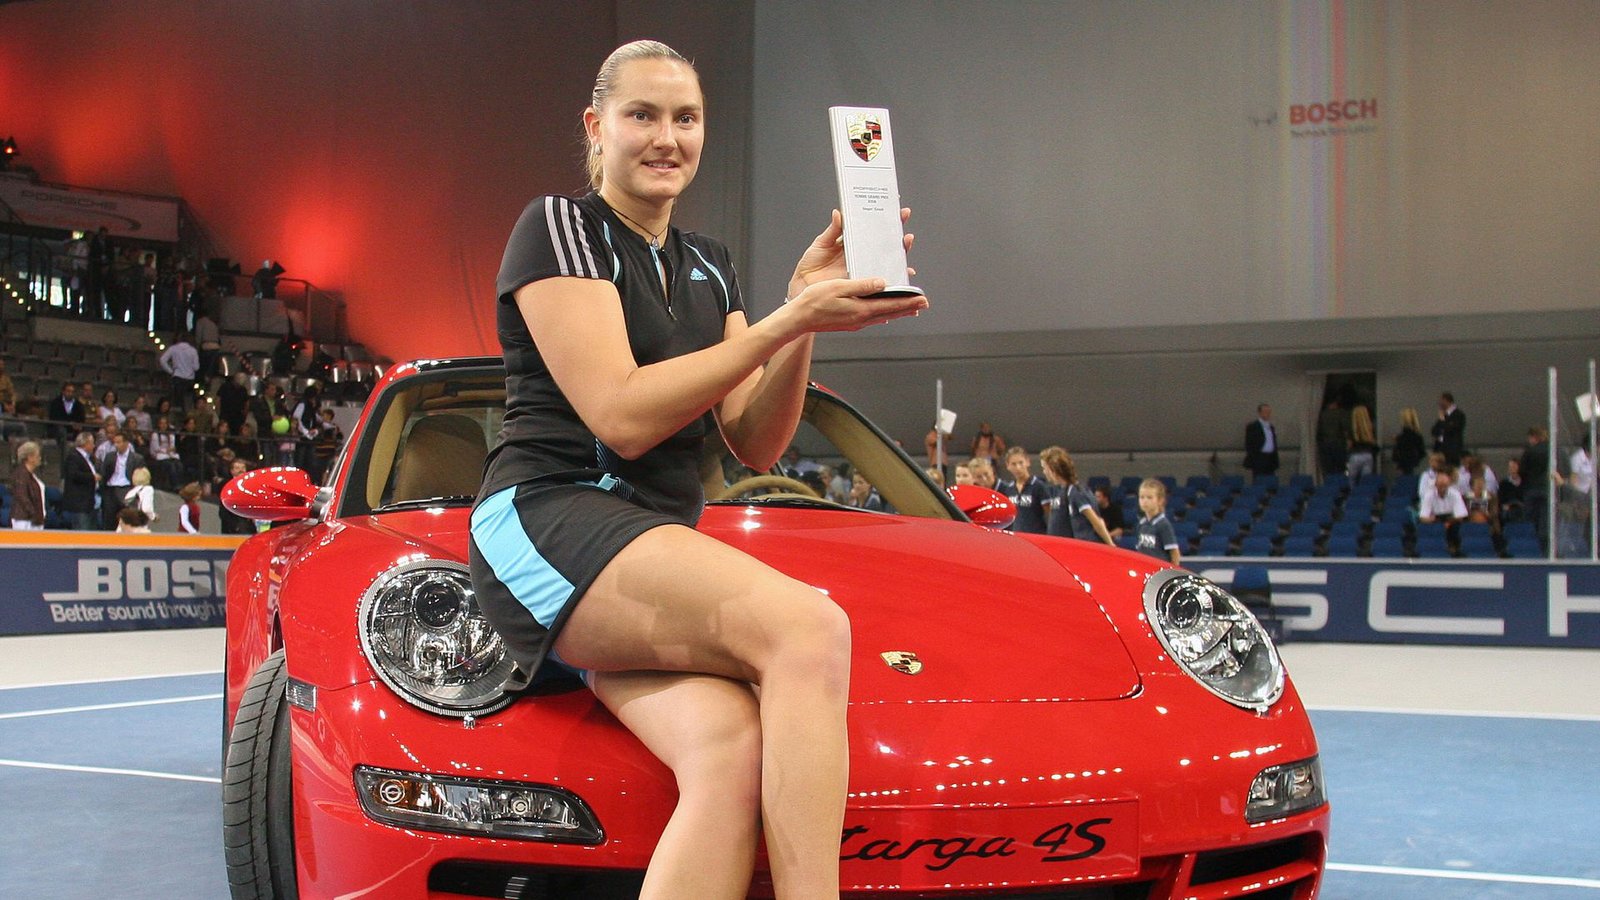 2006 begann die Ära in der Porsche Arena. Die erste Siegerin hieß Nadia Petrova. Damals wurde noch auf Hartplatz gespielt.Foto: Baumann